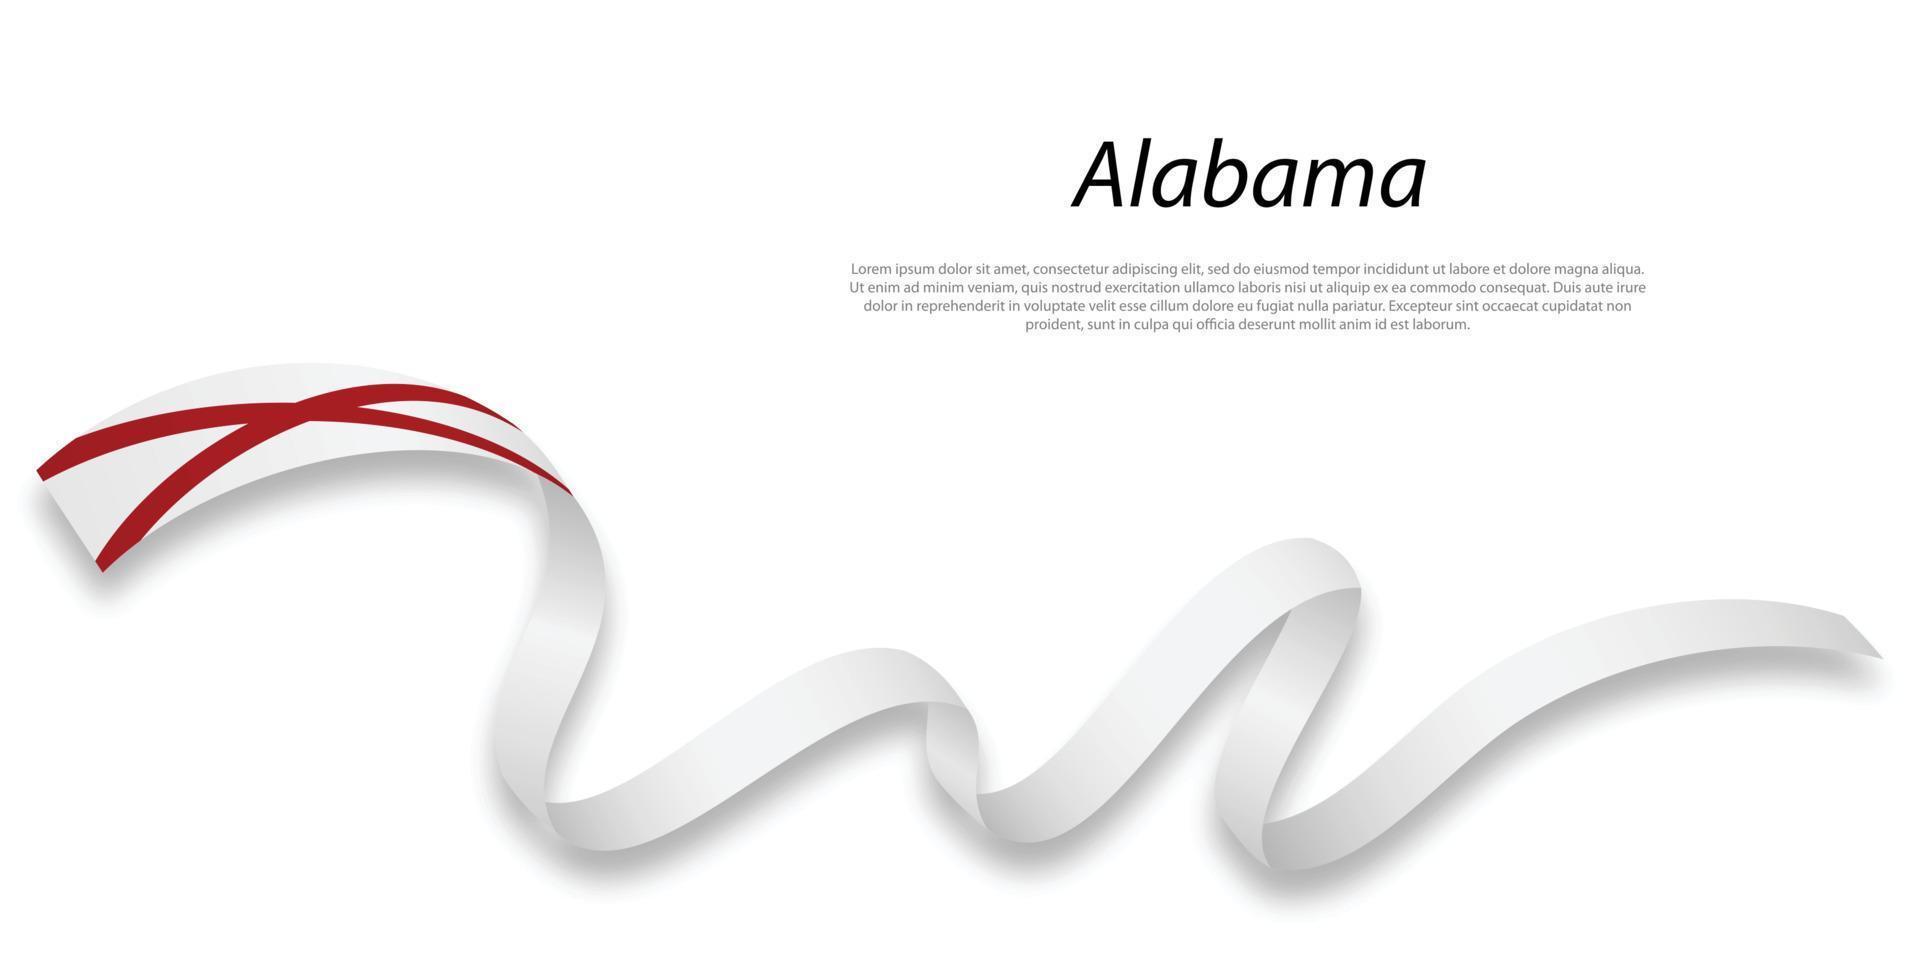 acenando fita ou listra com bandeira do Alabama vetor